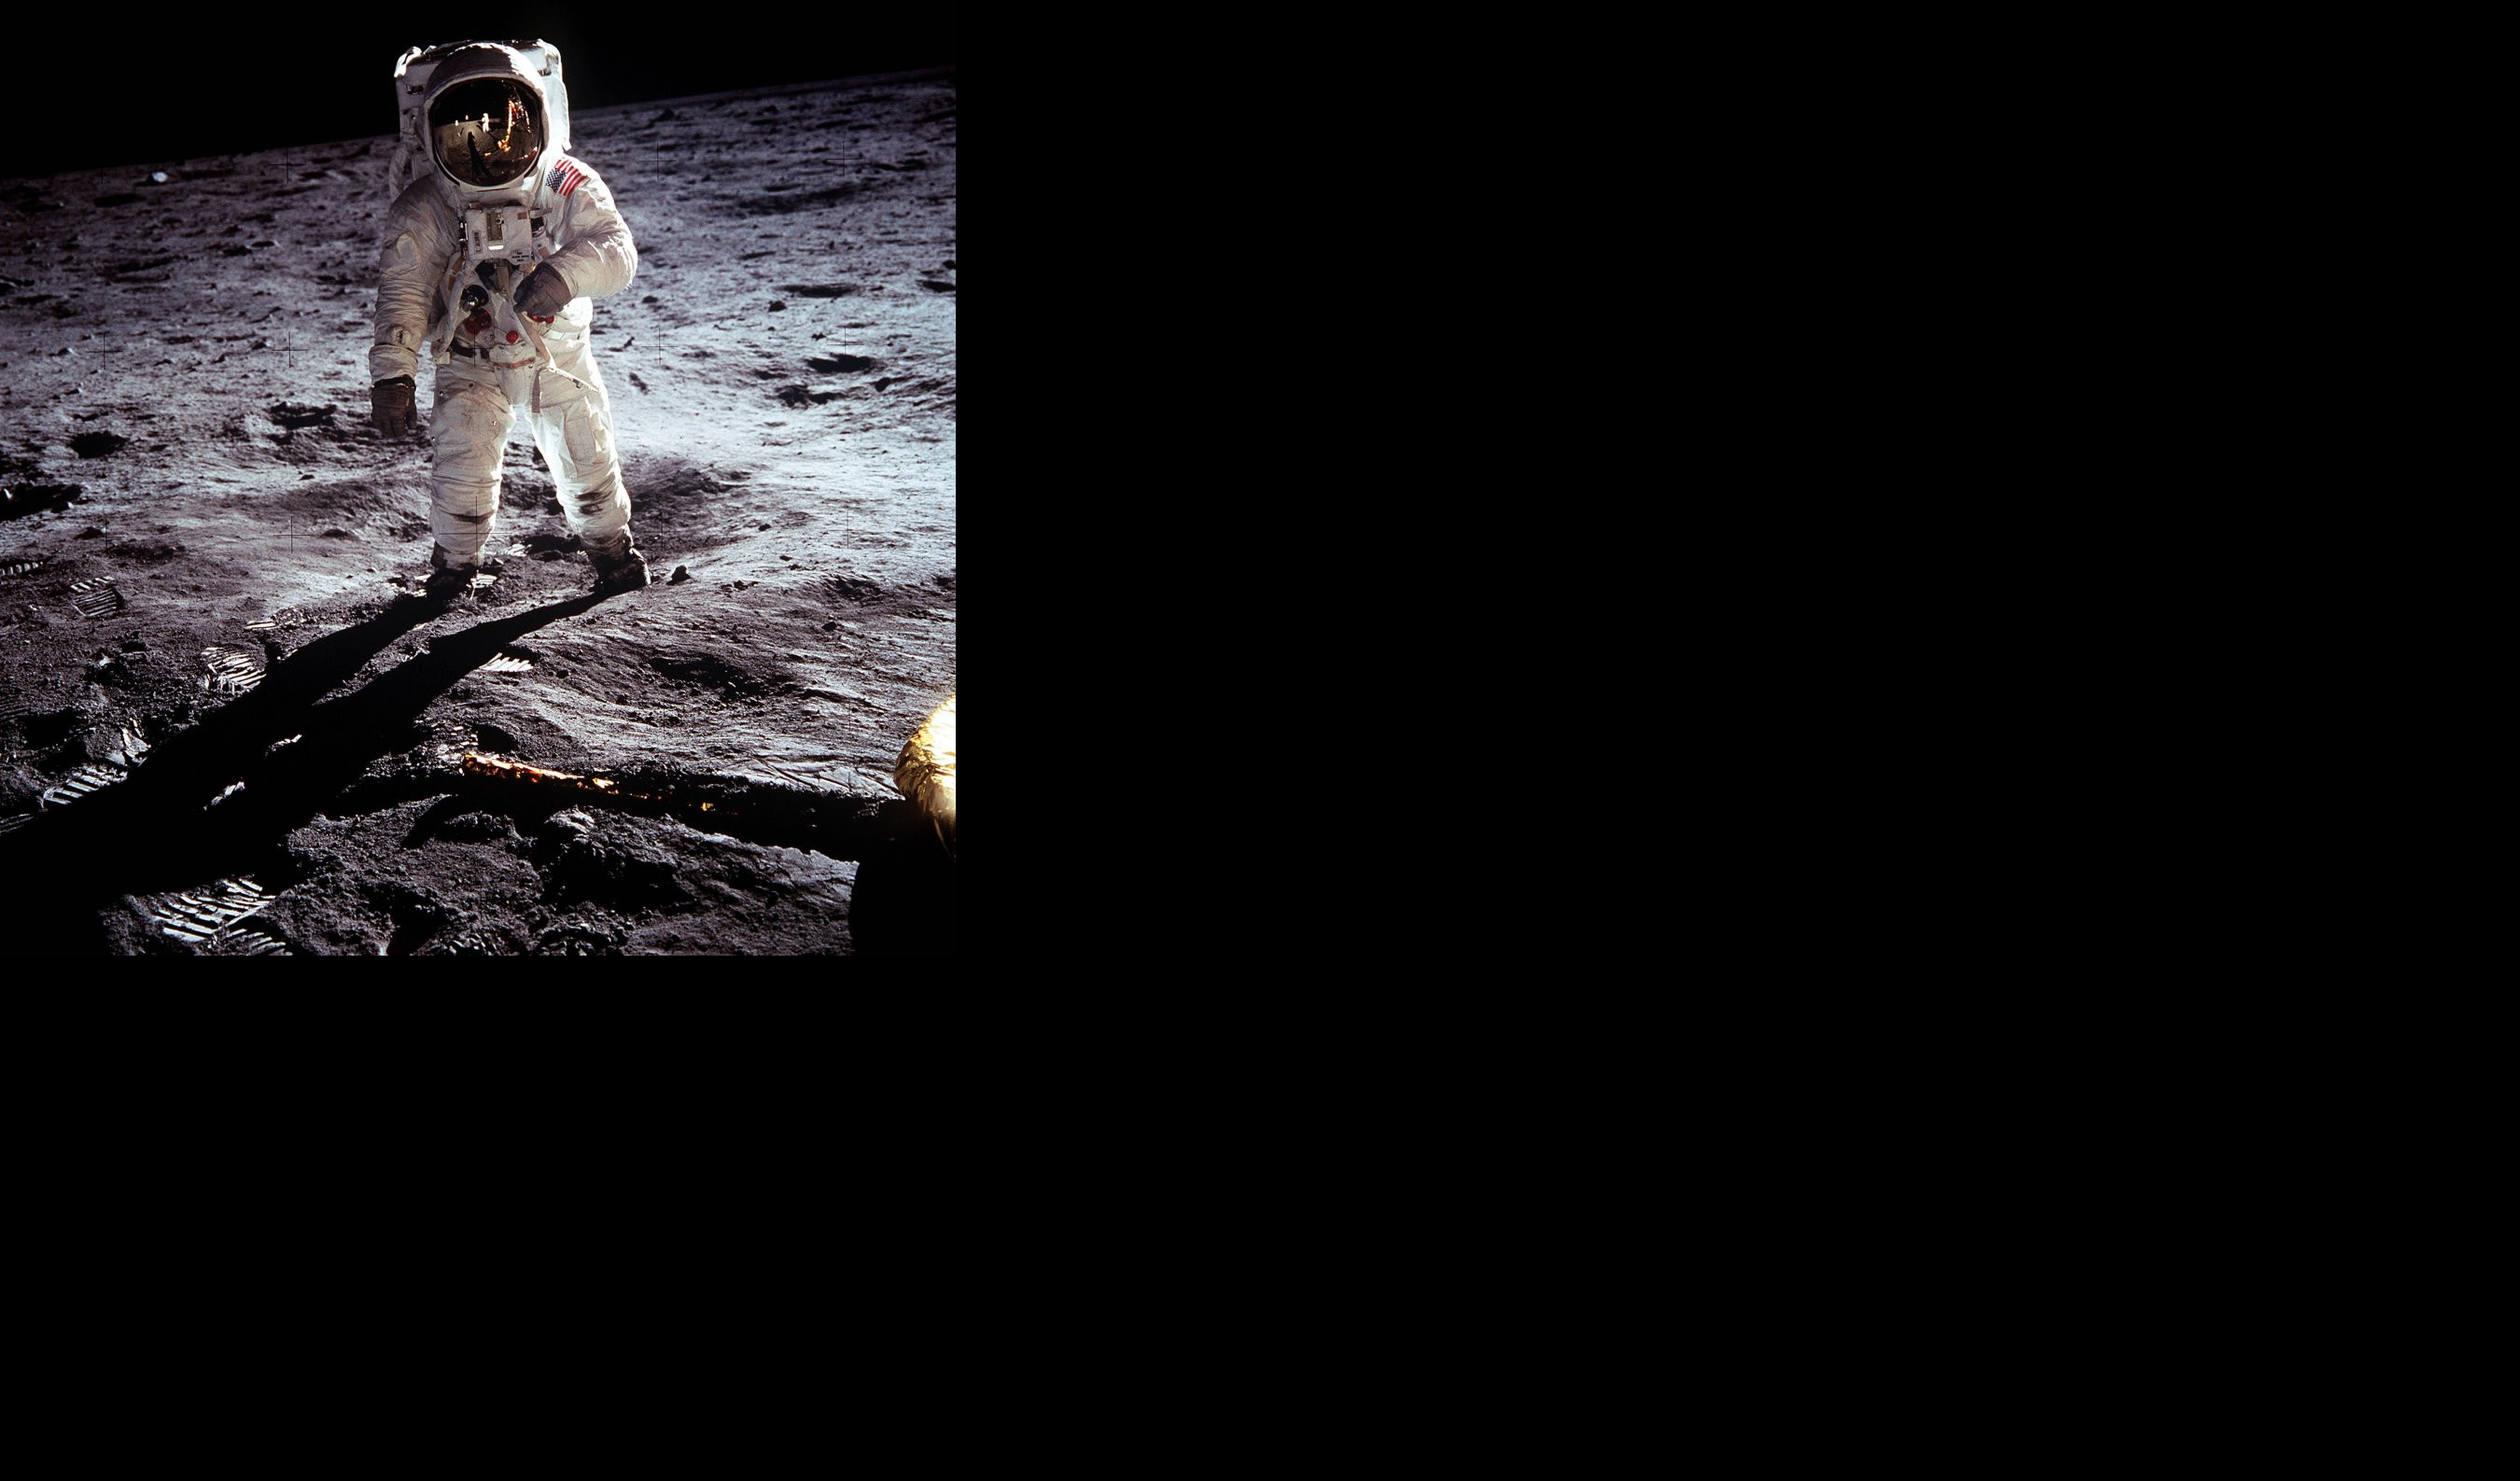 TREBA DA BUDETE PONOSNI! Skot o srpskim naučnicima u misiji "Apolo 11"!